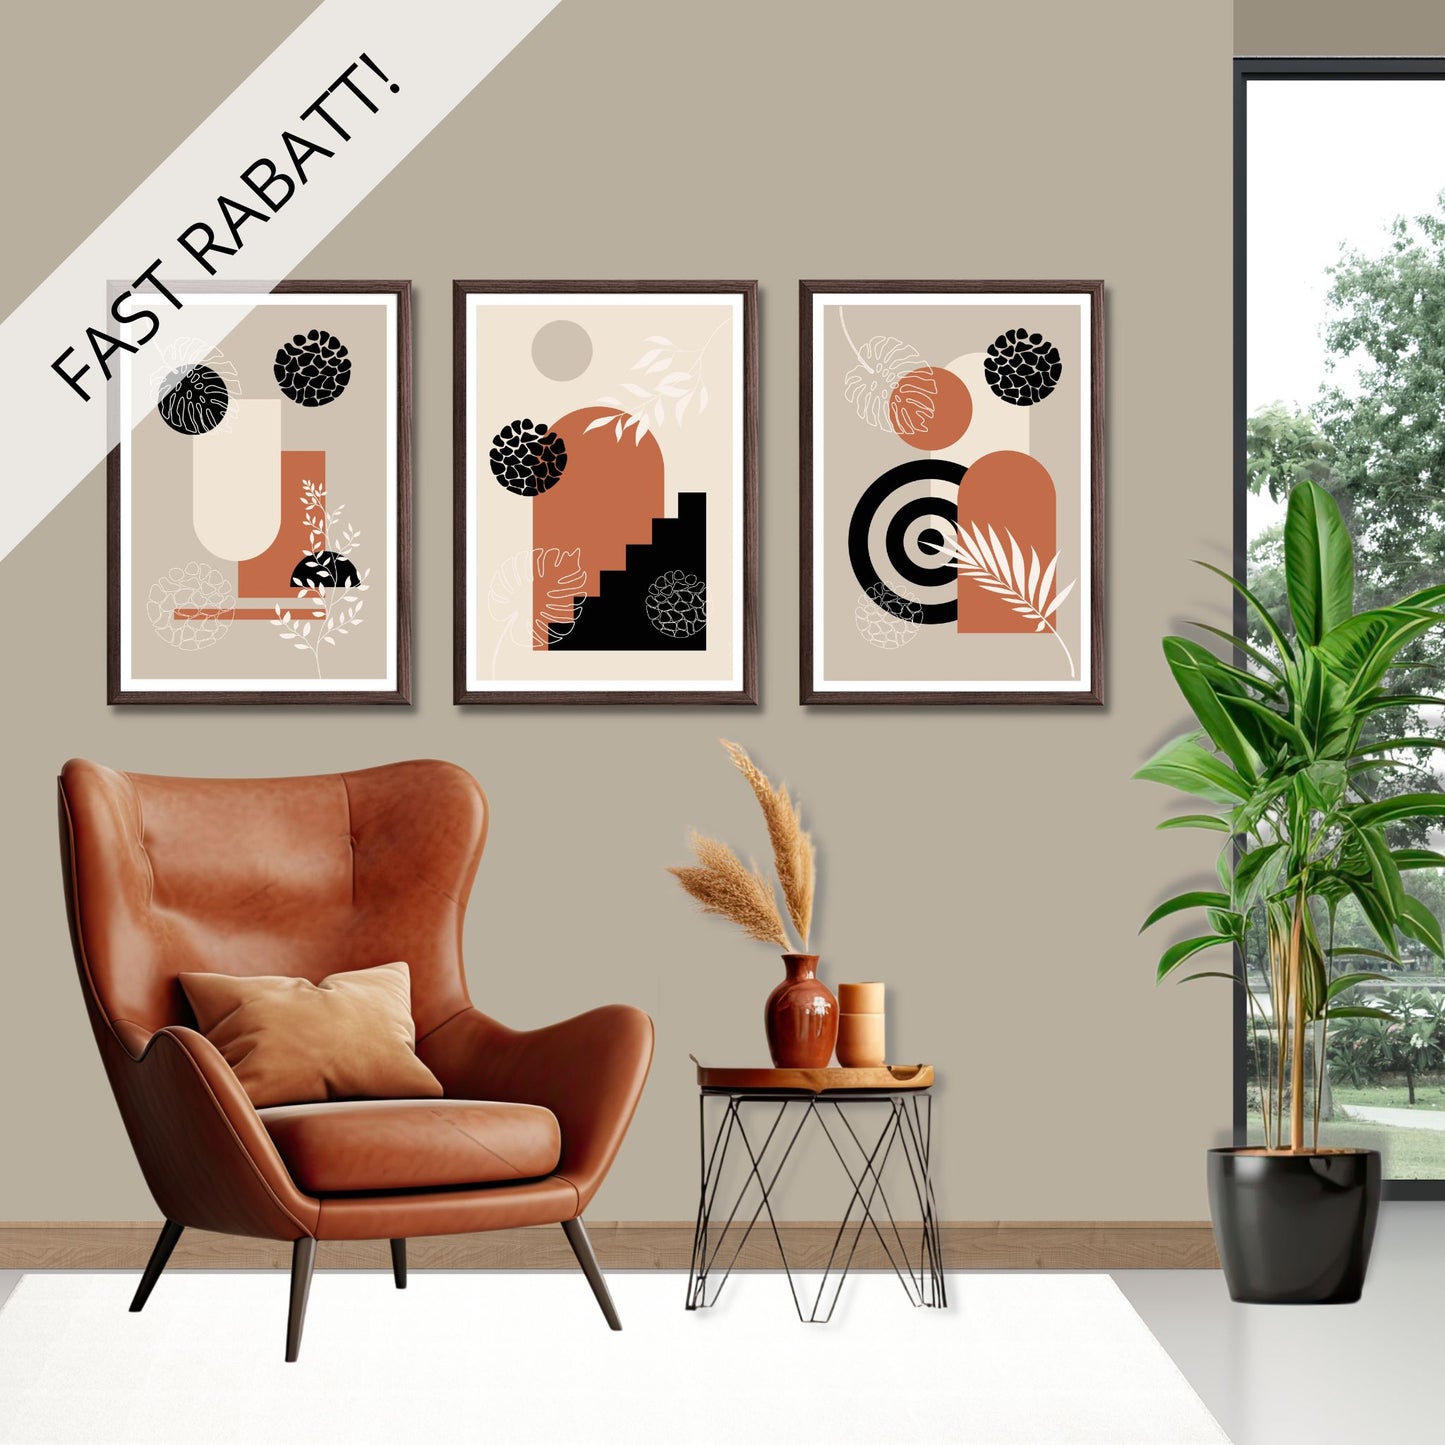 Abstract Shapes serie i sort, beige, rust og hvite fargenyanser. Fås som plakat og lerret. Illustrasjonen viser serien på en vegg i brune rammer.